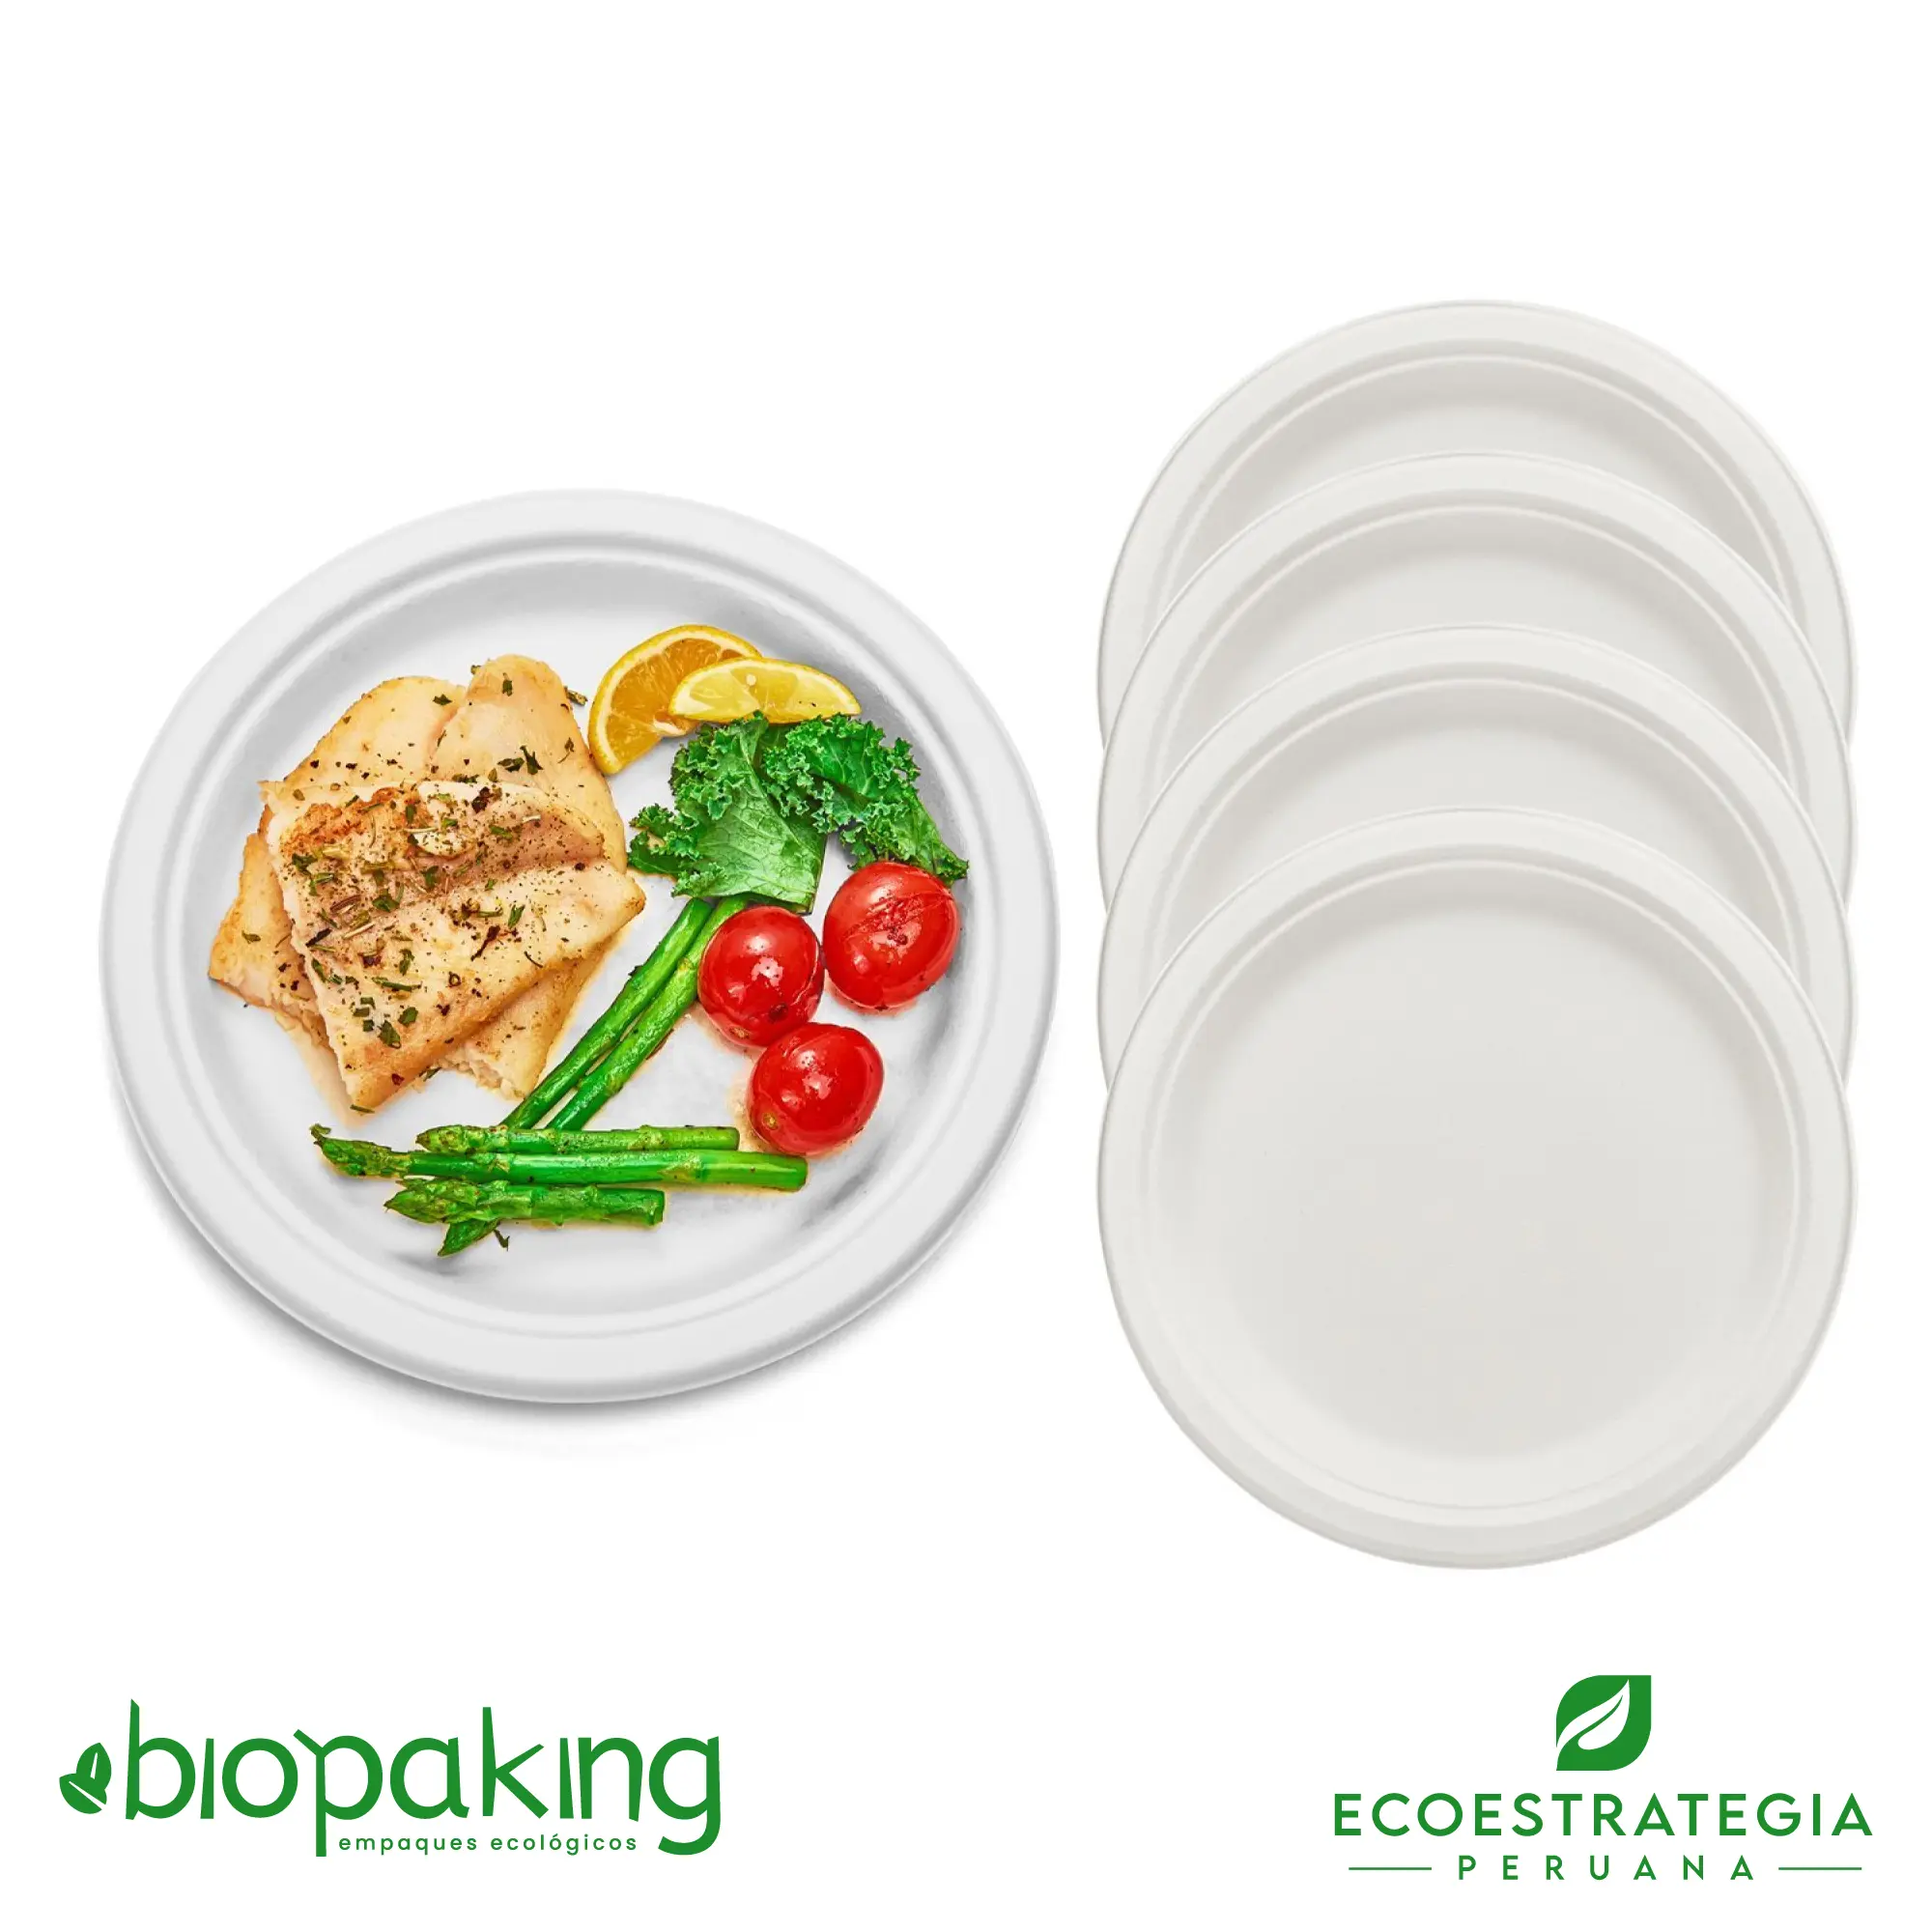 Este plato de 26 cm, es un producto de materiales biodegradables, hecho a base de fibra de caña de azúcar. Cotiza envases, empaques y tapers bio para comidas